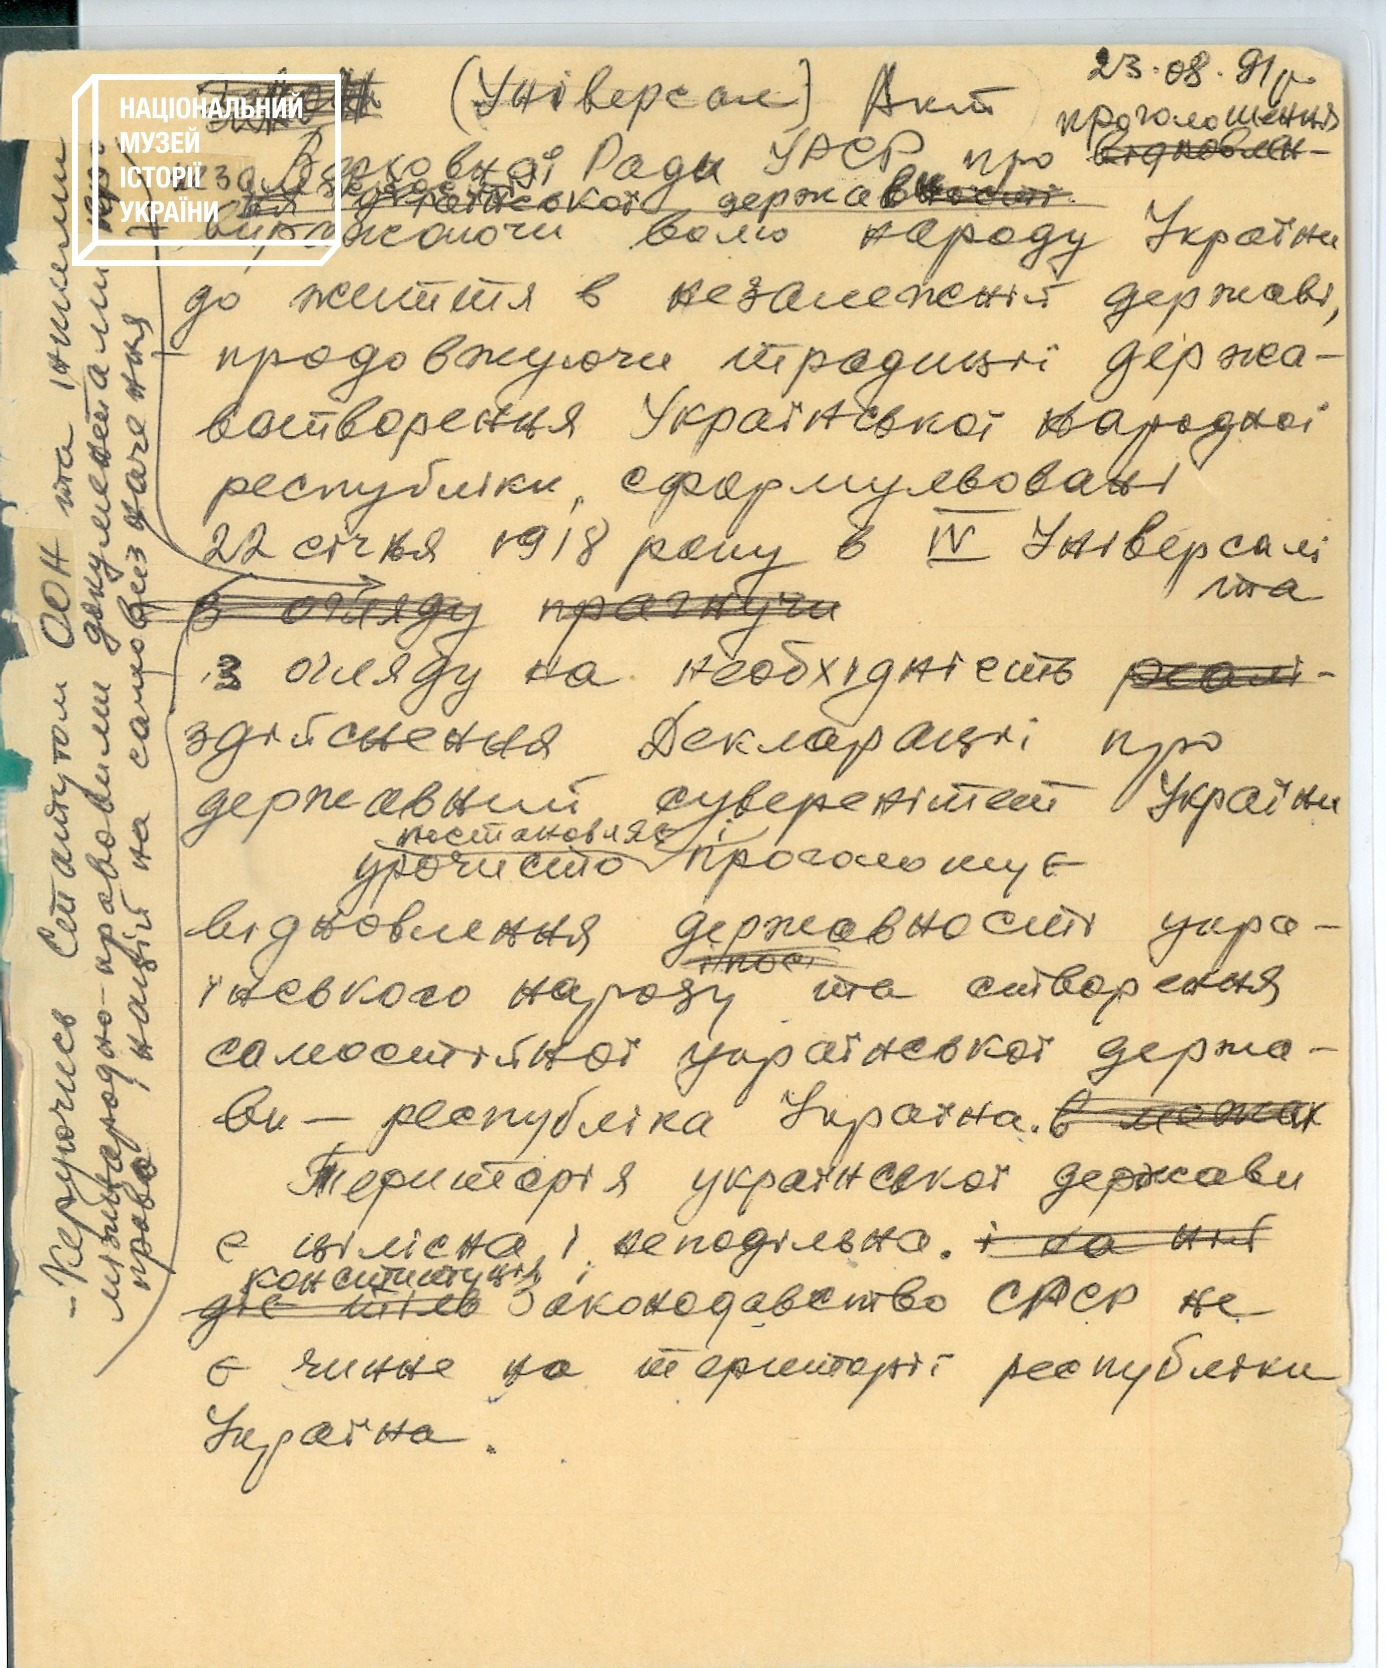 Титульна сторінка чернетки Акта проголошення незалежності України. Її вранці 23 серпня 1991 року написав Левко Лук’яненко у співавторстві з Леонтієм Сандуляком.